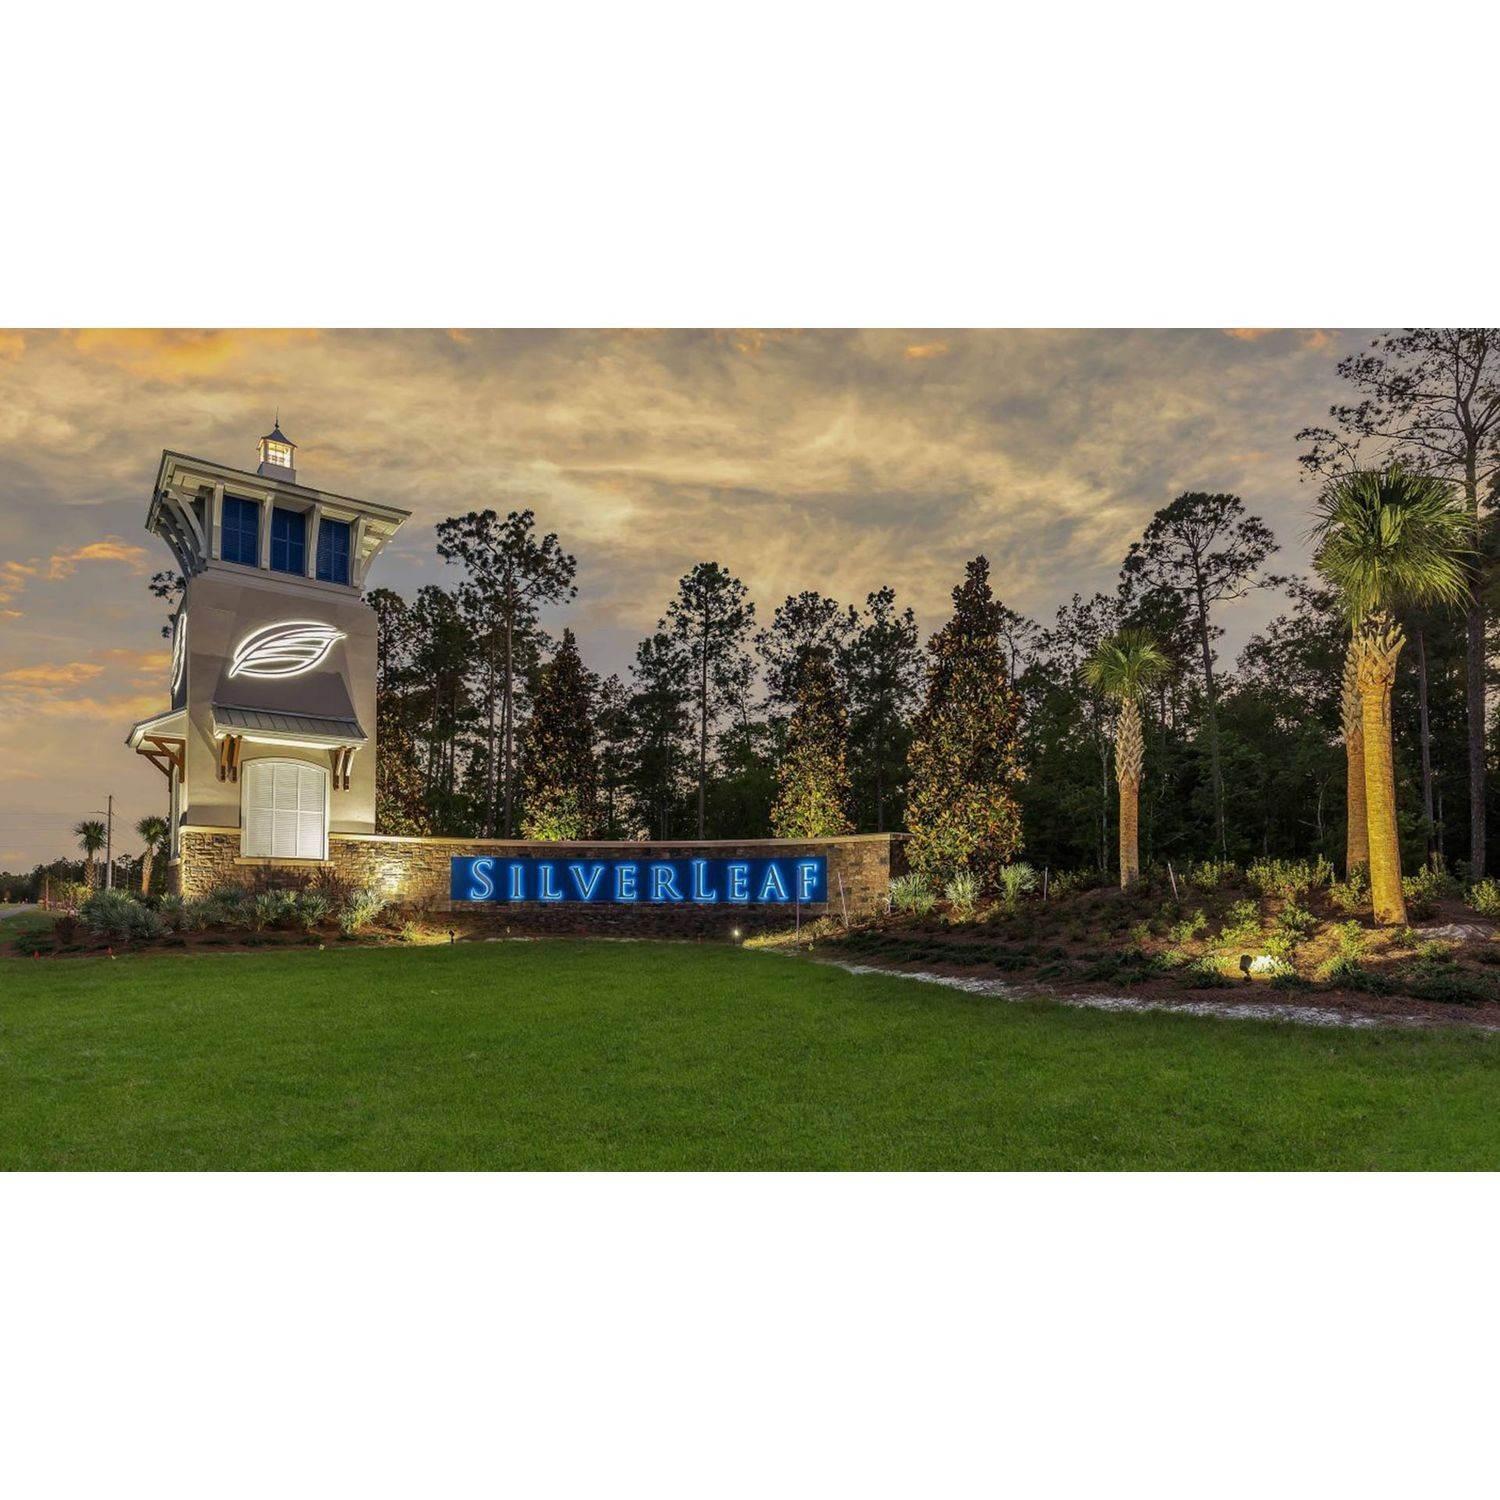 SilverLeaf Waterford Lakes building at 43 Coastline Way, St. Augustine, FL 32092